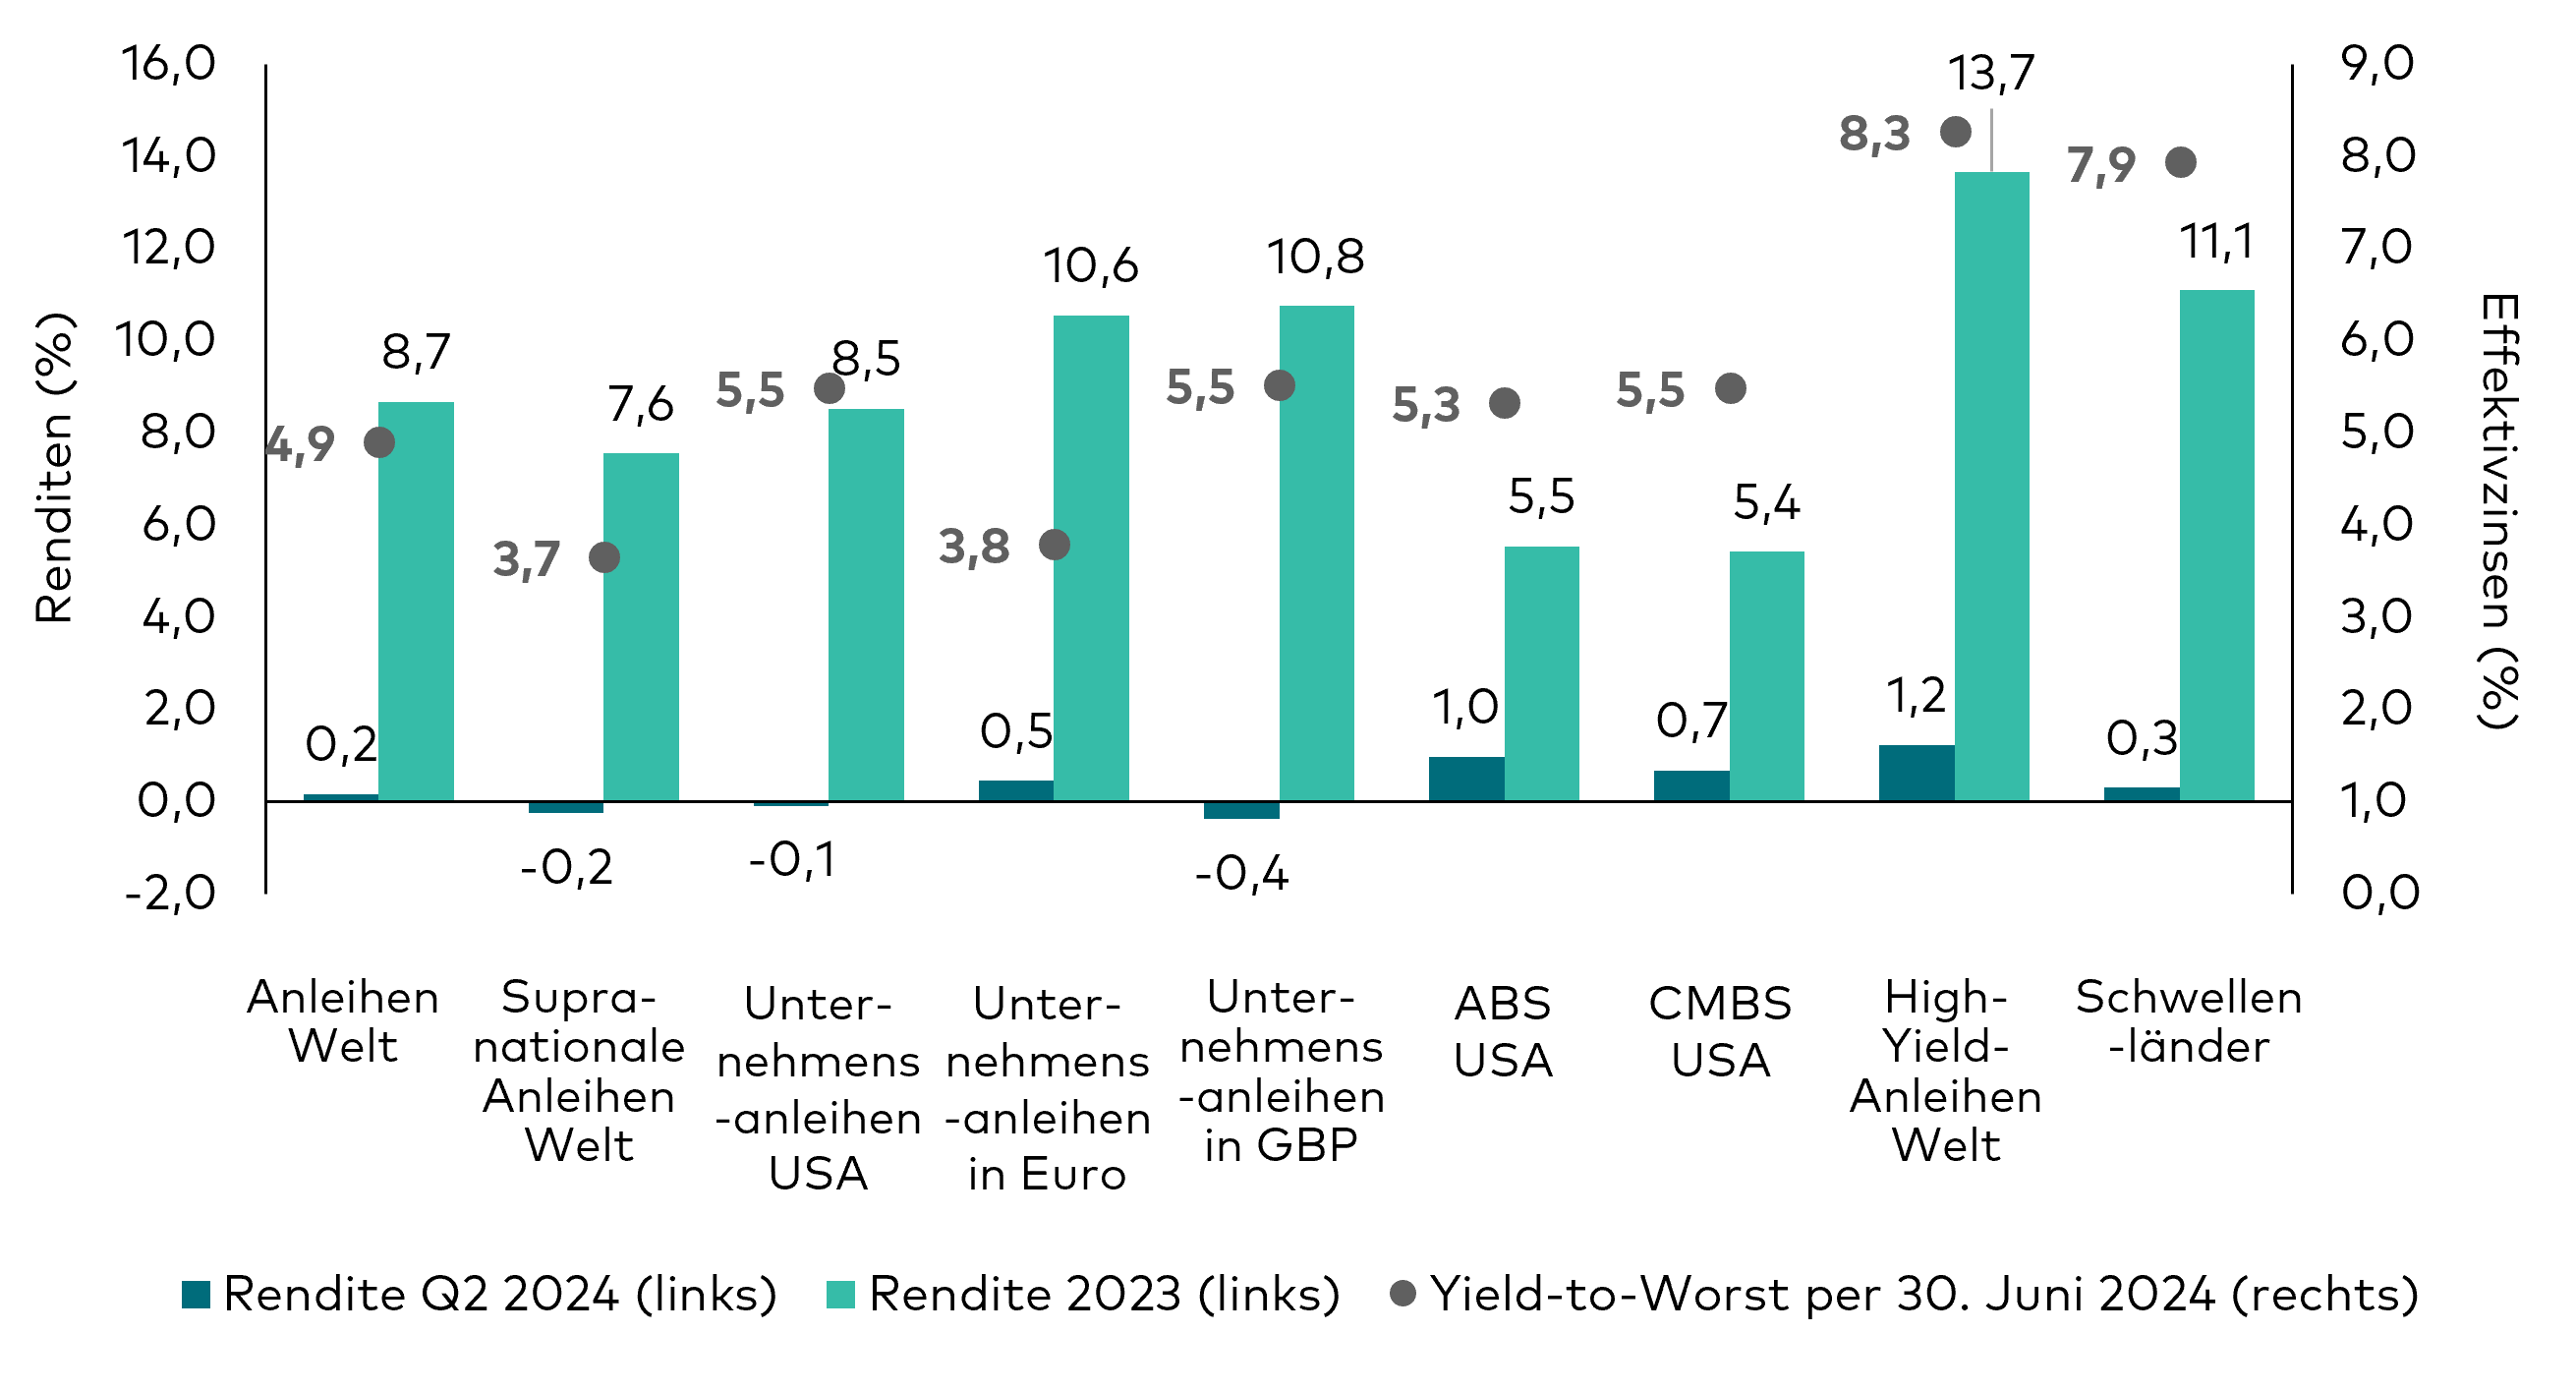 Eine Reihe von Balken- und Punktdiagrammen zeigen die Renditen für das zweite Quartal 2024, die Renditen seit Jahresbeginn bis zum 30. Juni 2024 und den Yield-to-Worst zum 30. Juni 2024 für verschiedene Segmente der Anleihenmärkte.